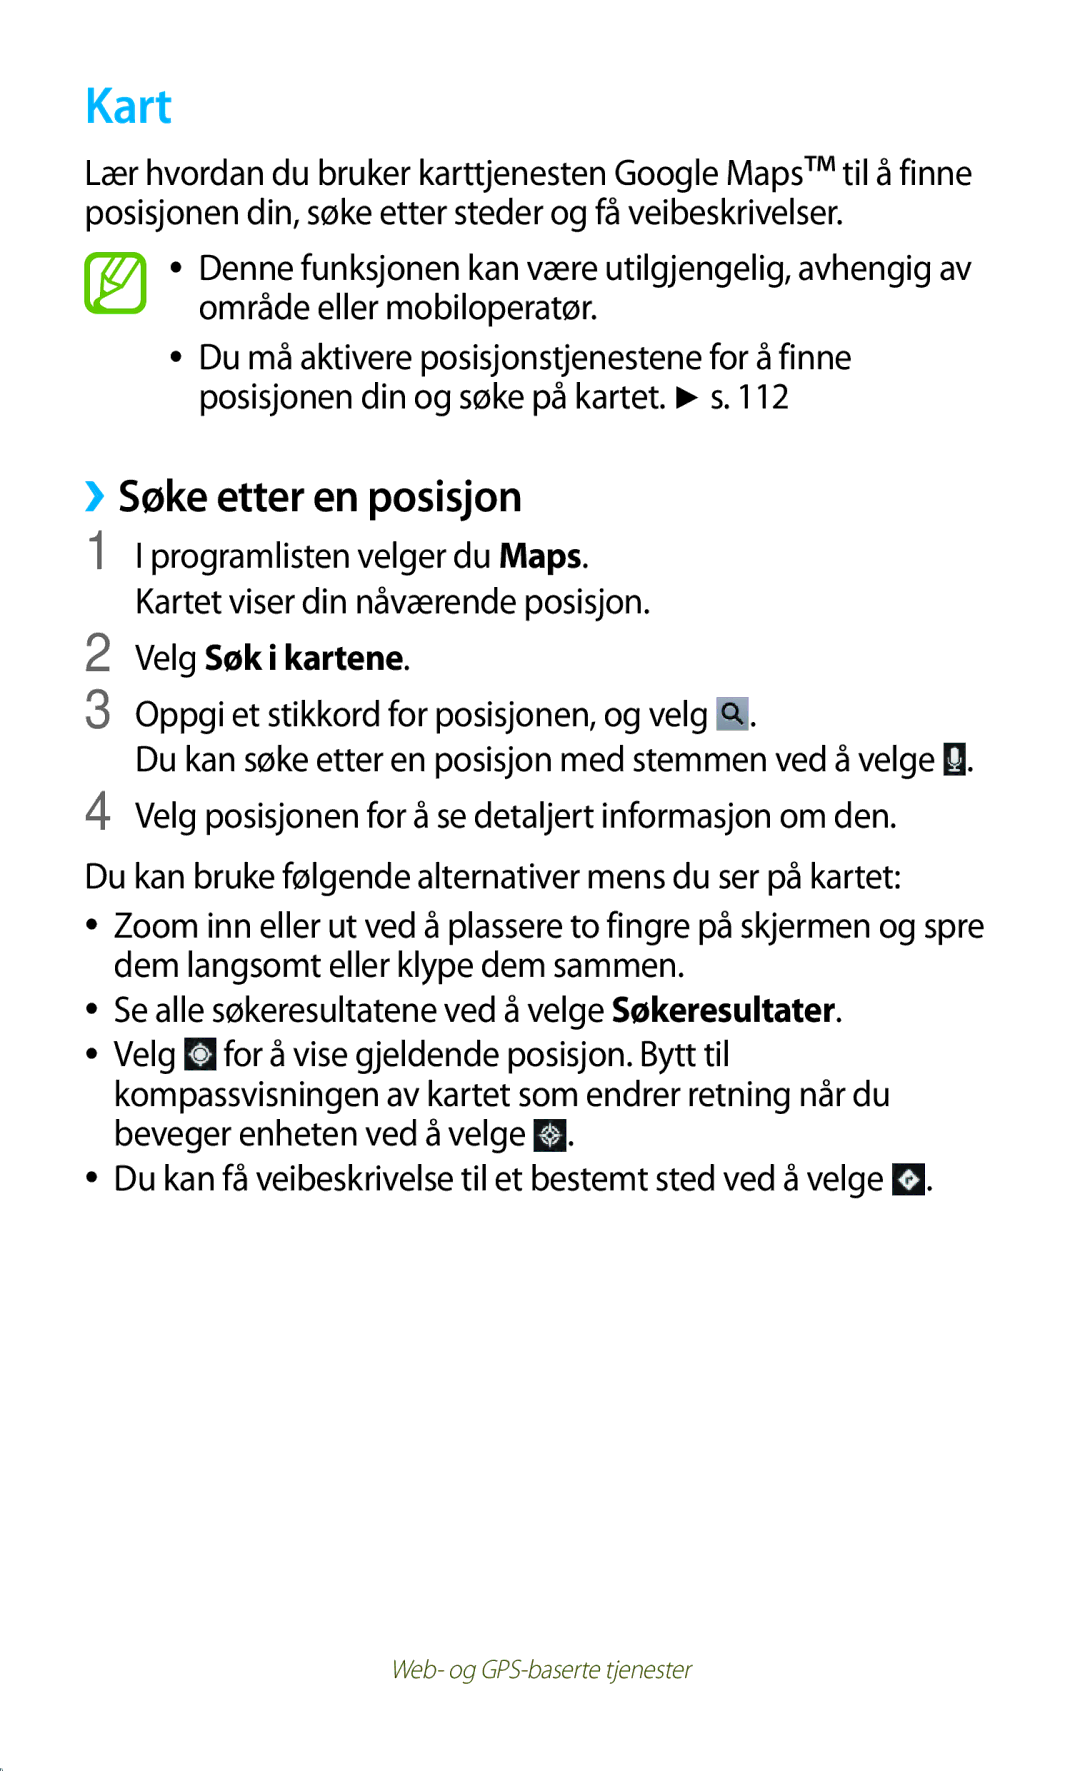 Samsung GT-P3100GRANEE manual Kart, ››Søke etter en posisjon, Velg Søk i kartene, Oppgi et stikkord for posisjonen, og velg 